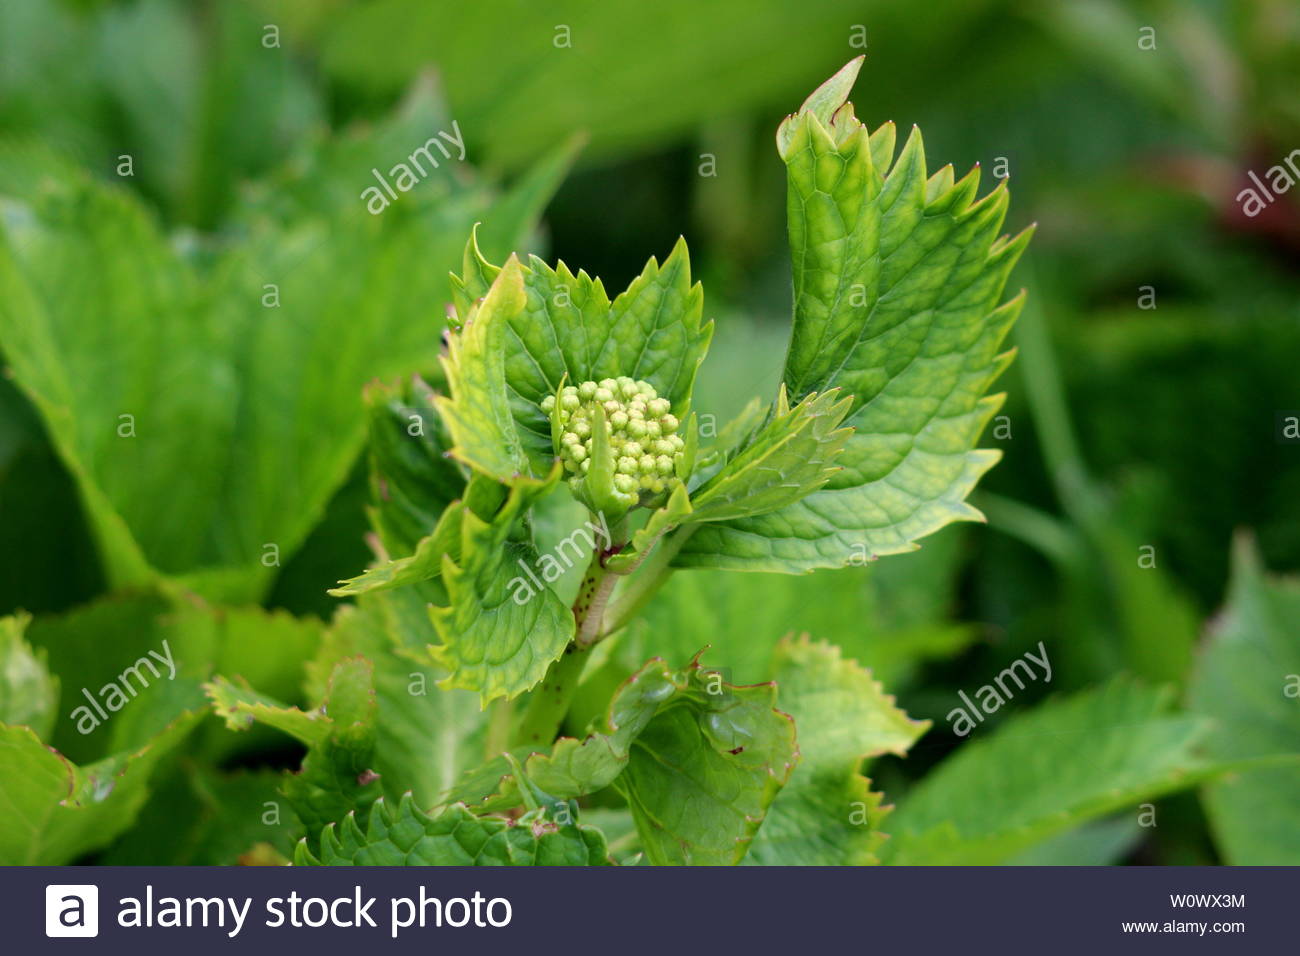 Bilder Garten Einzigartig Closeup Od Hydrangea or Hortensia Garden Shrub Closed Flower